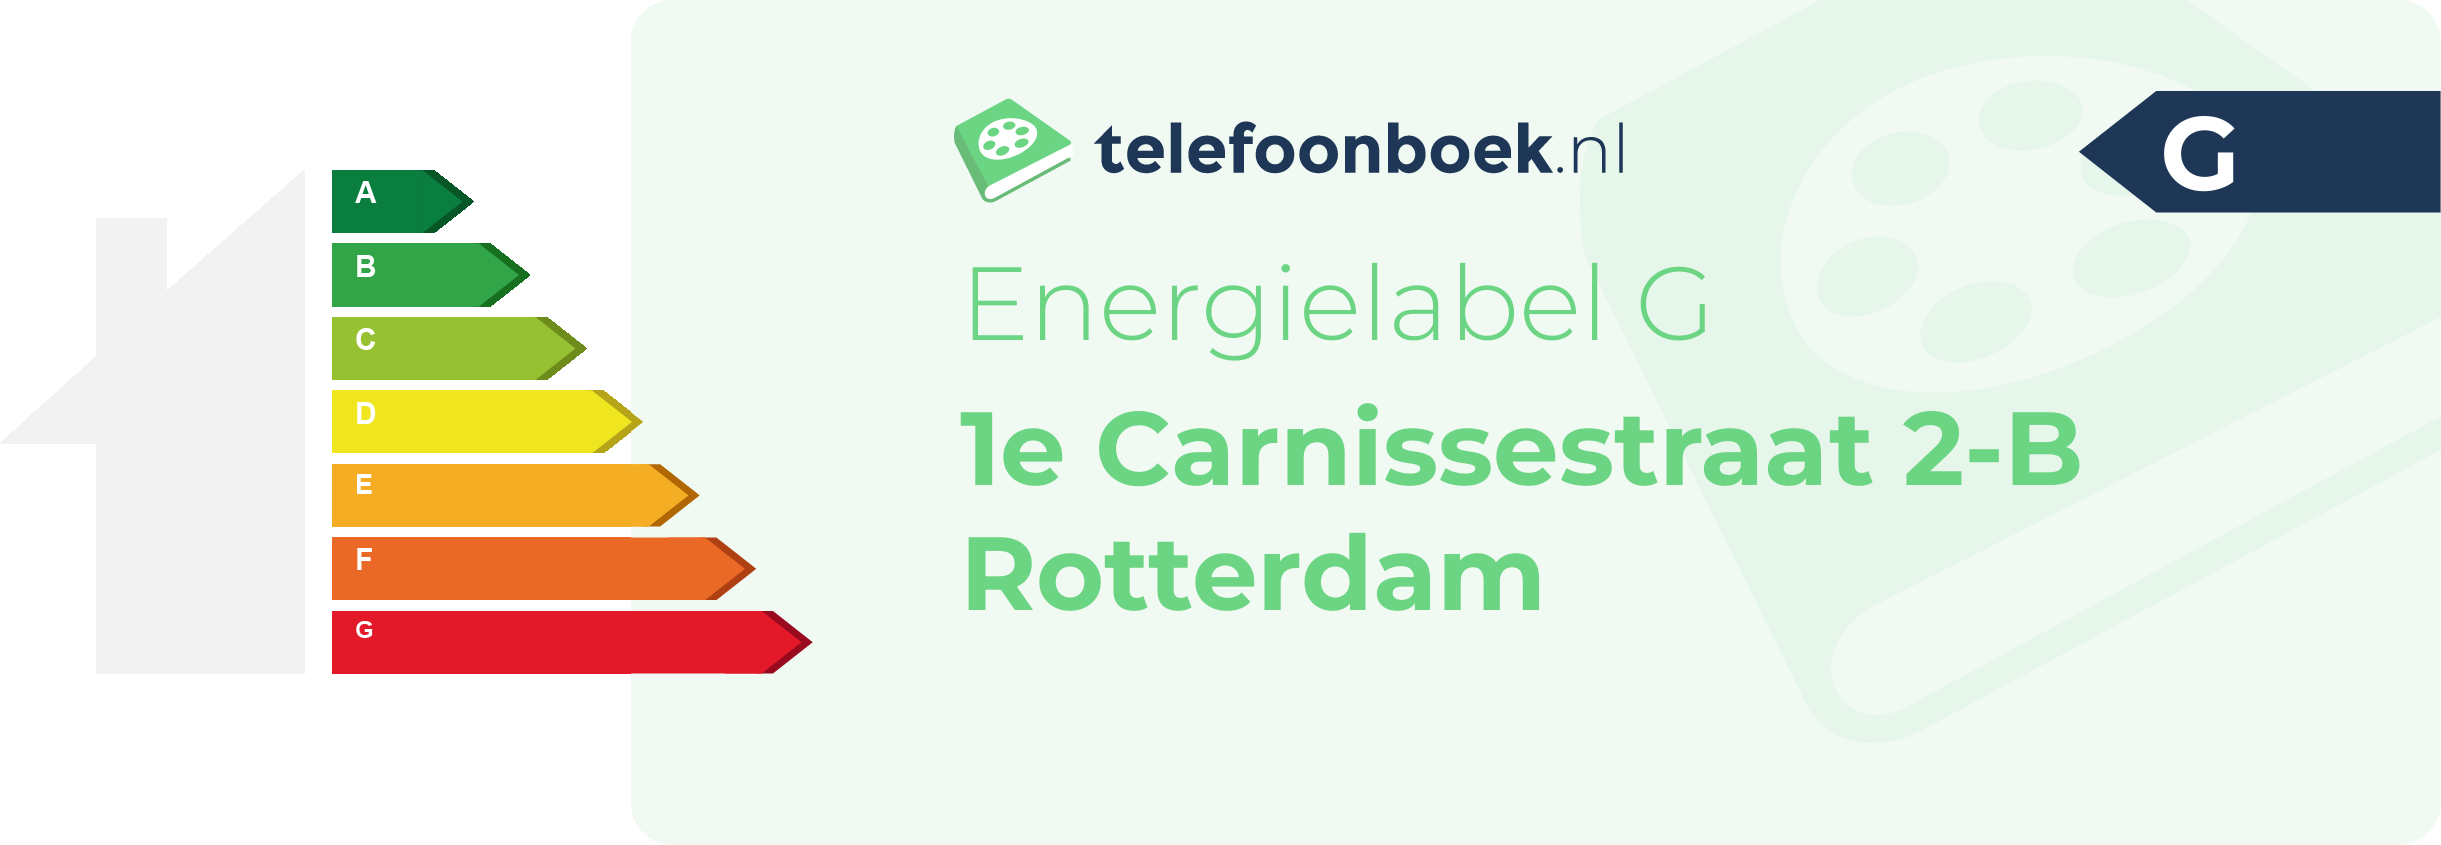 Energielabel 1e Carnissestraat 2-B Rotterdam